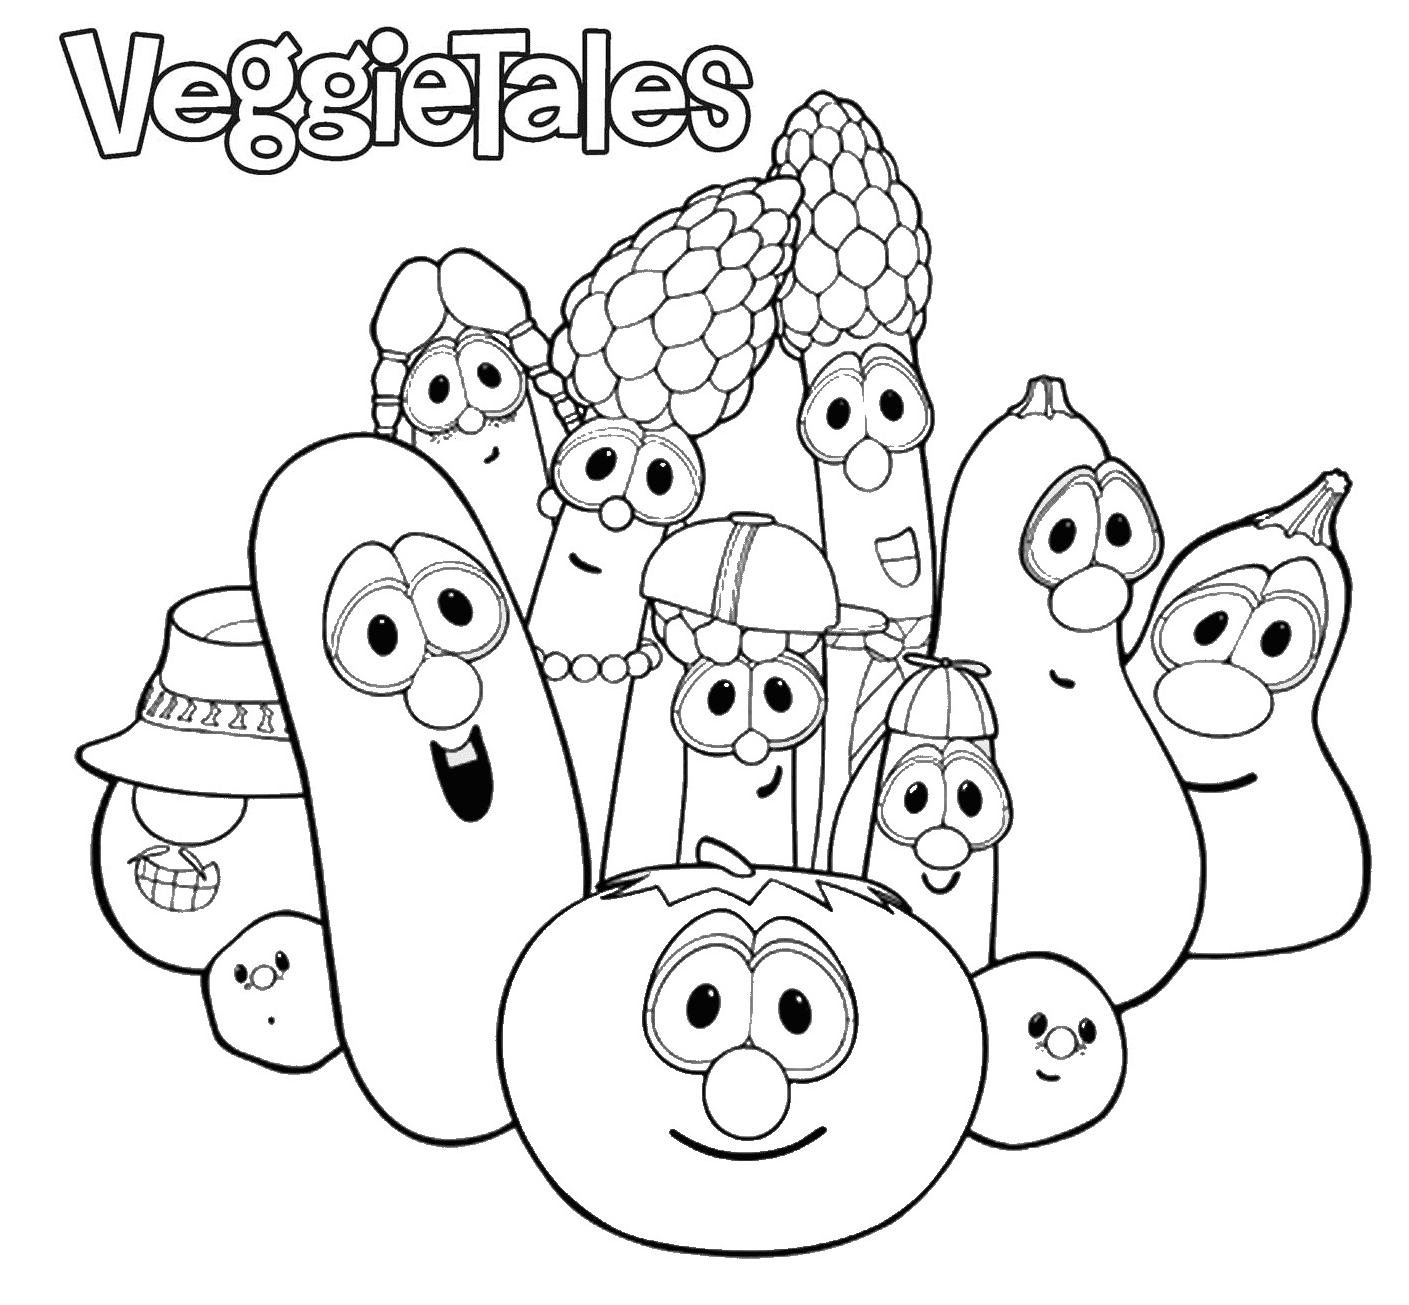 VeggieTales 来自 VeggieTales